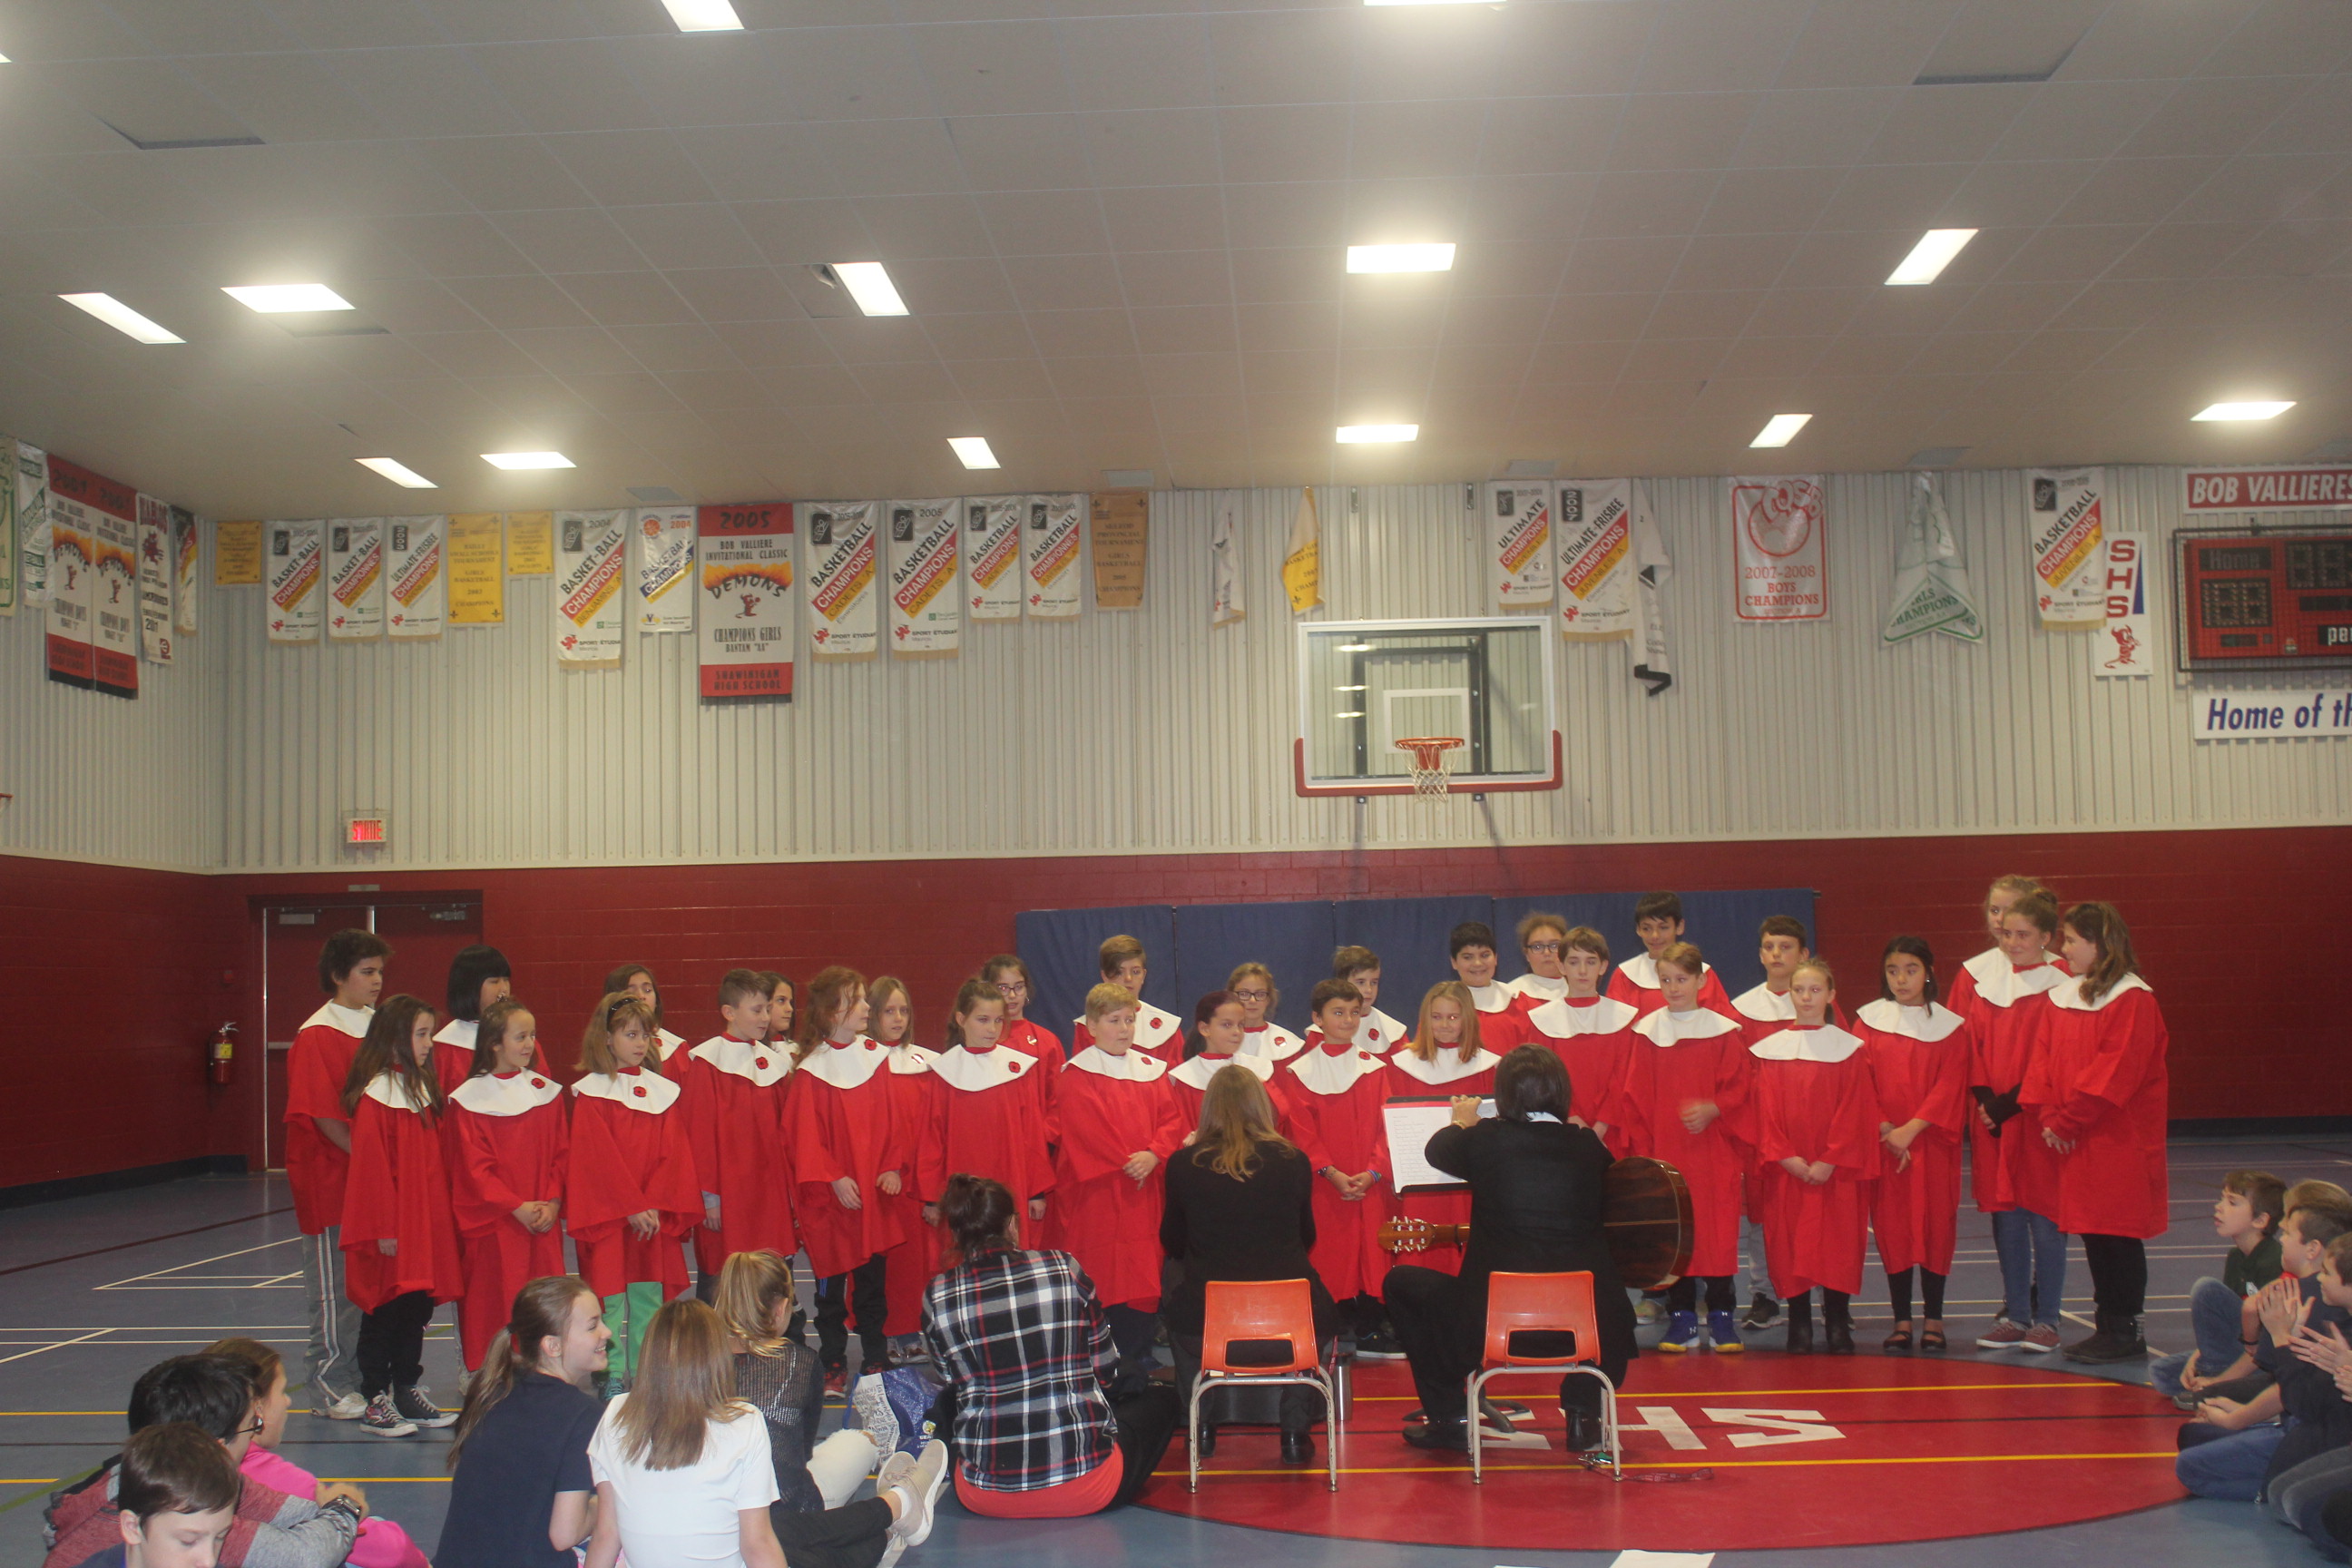 Grade 6 Students singing. K. Kiolet 2019